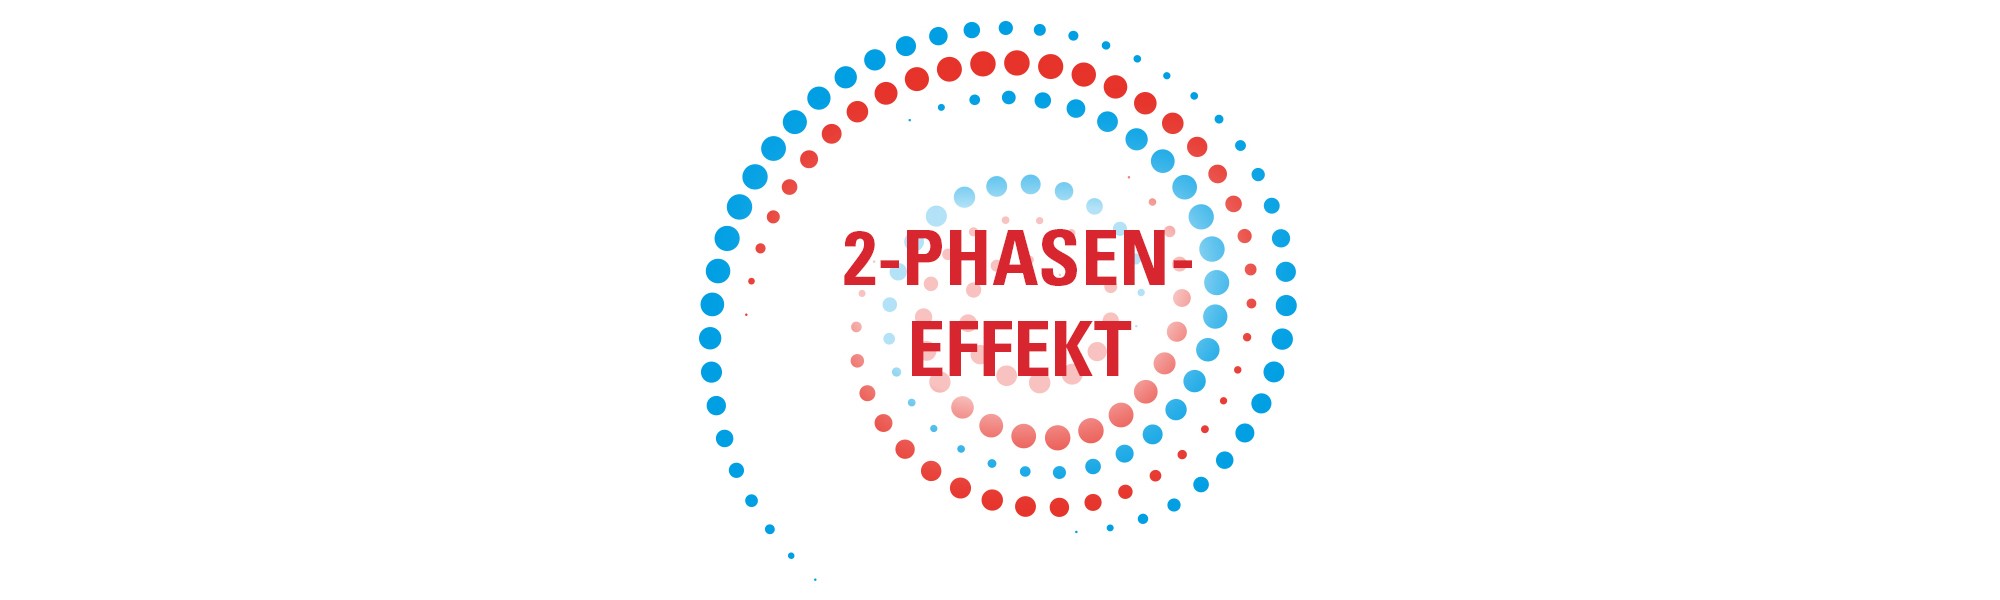 Category 2-Phasen-Effekt